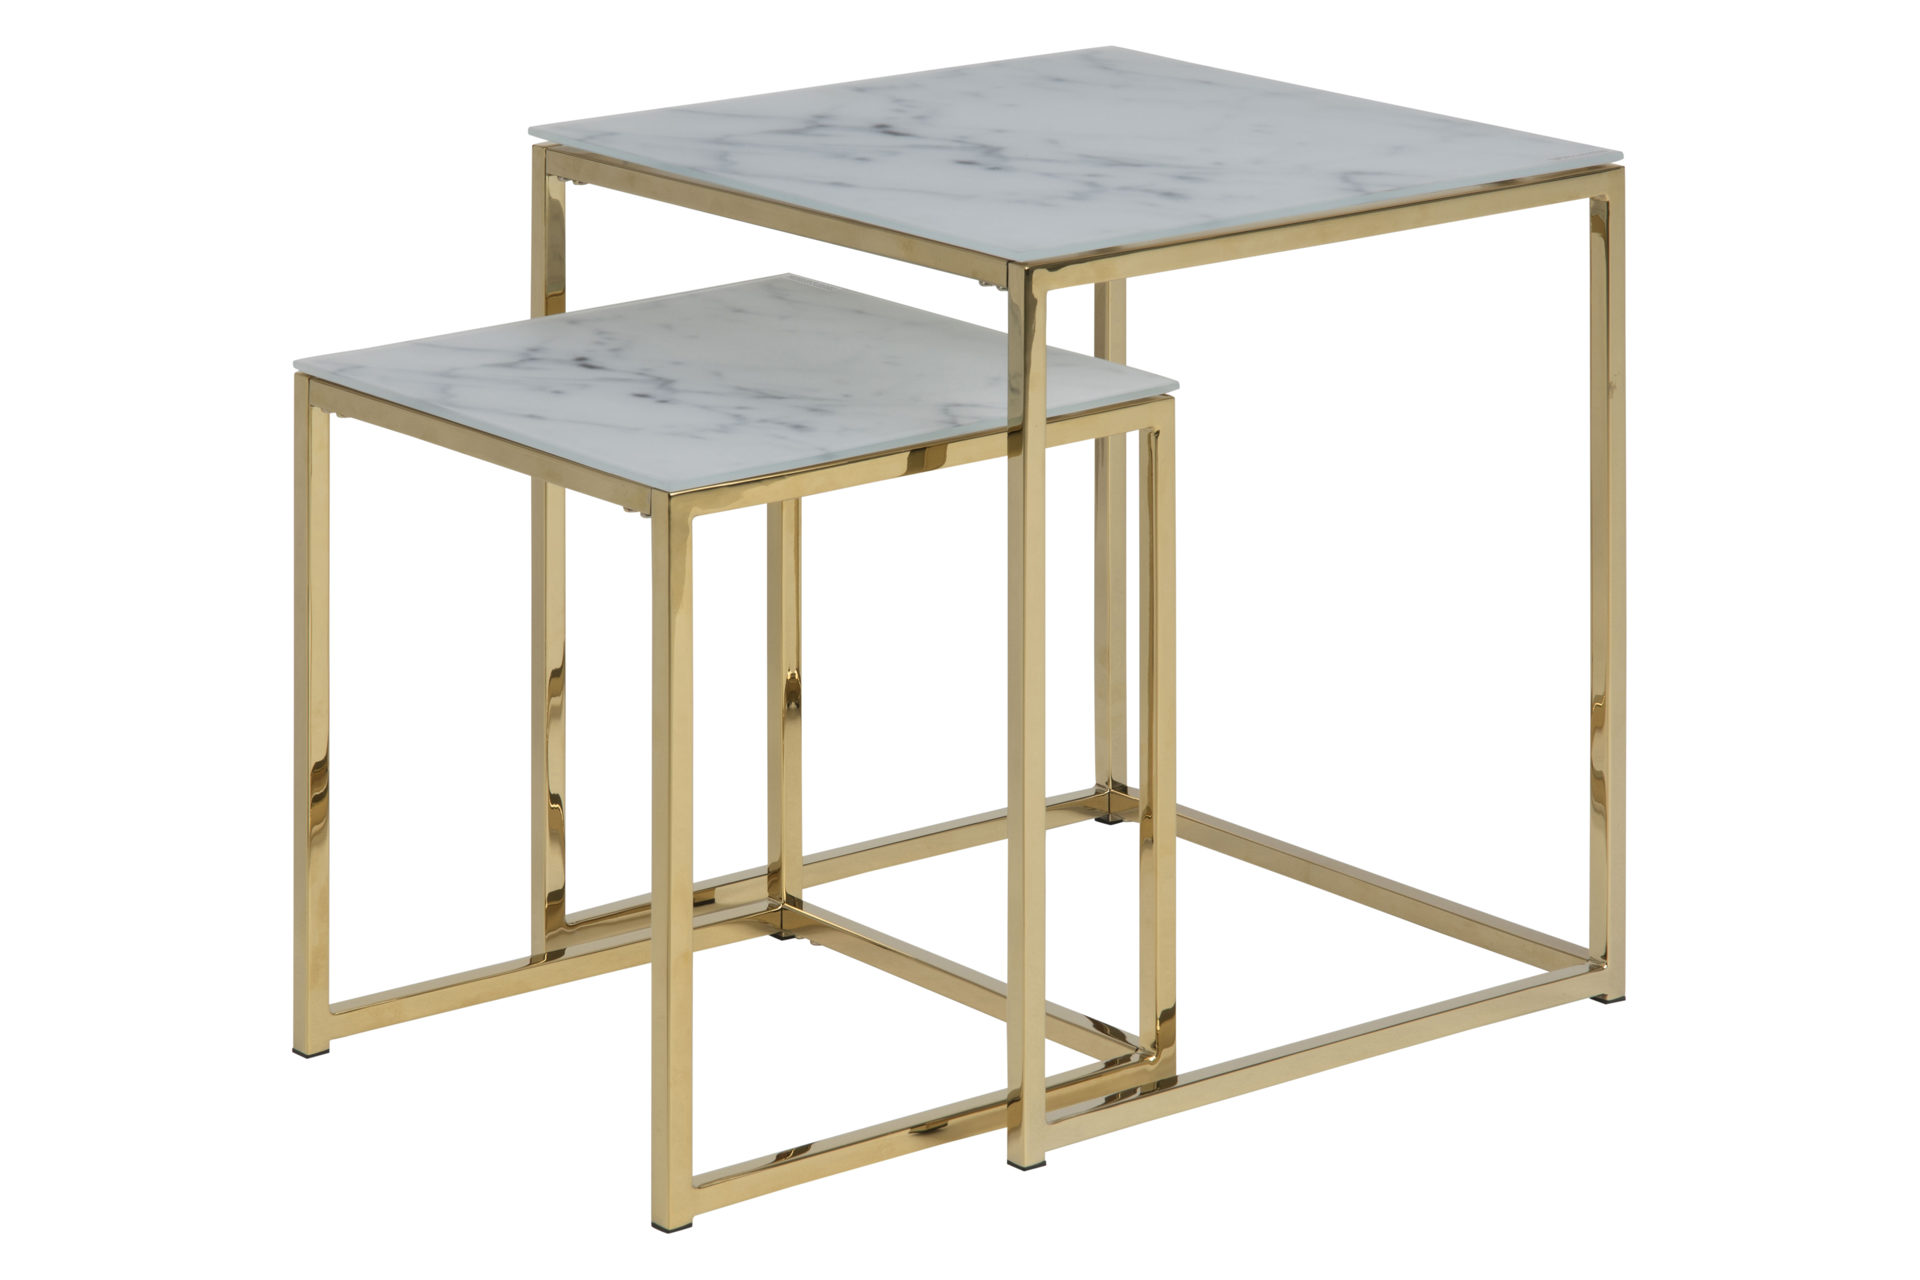 3-Satz-Tisch Actona group a/s aus Glas in Weiß Zwei-Satz-Tisch bzw. Wohnzimmertisch-Set Alisma Weiß & Gold – zweiteilig